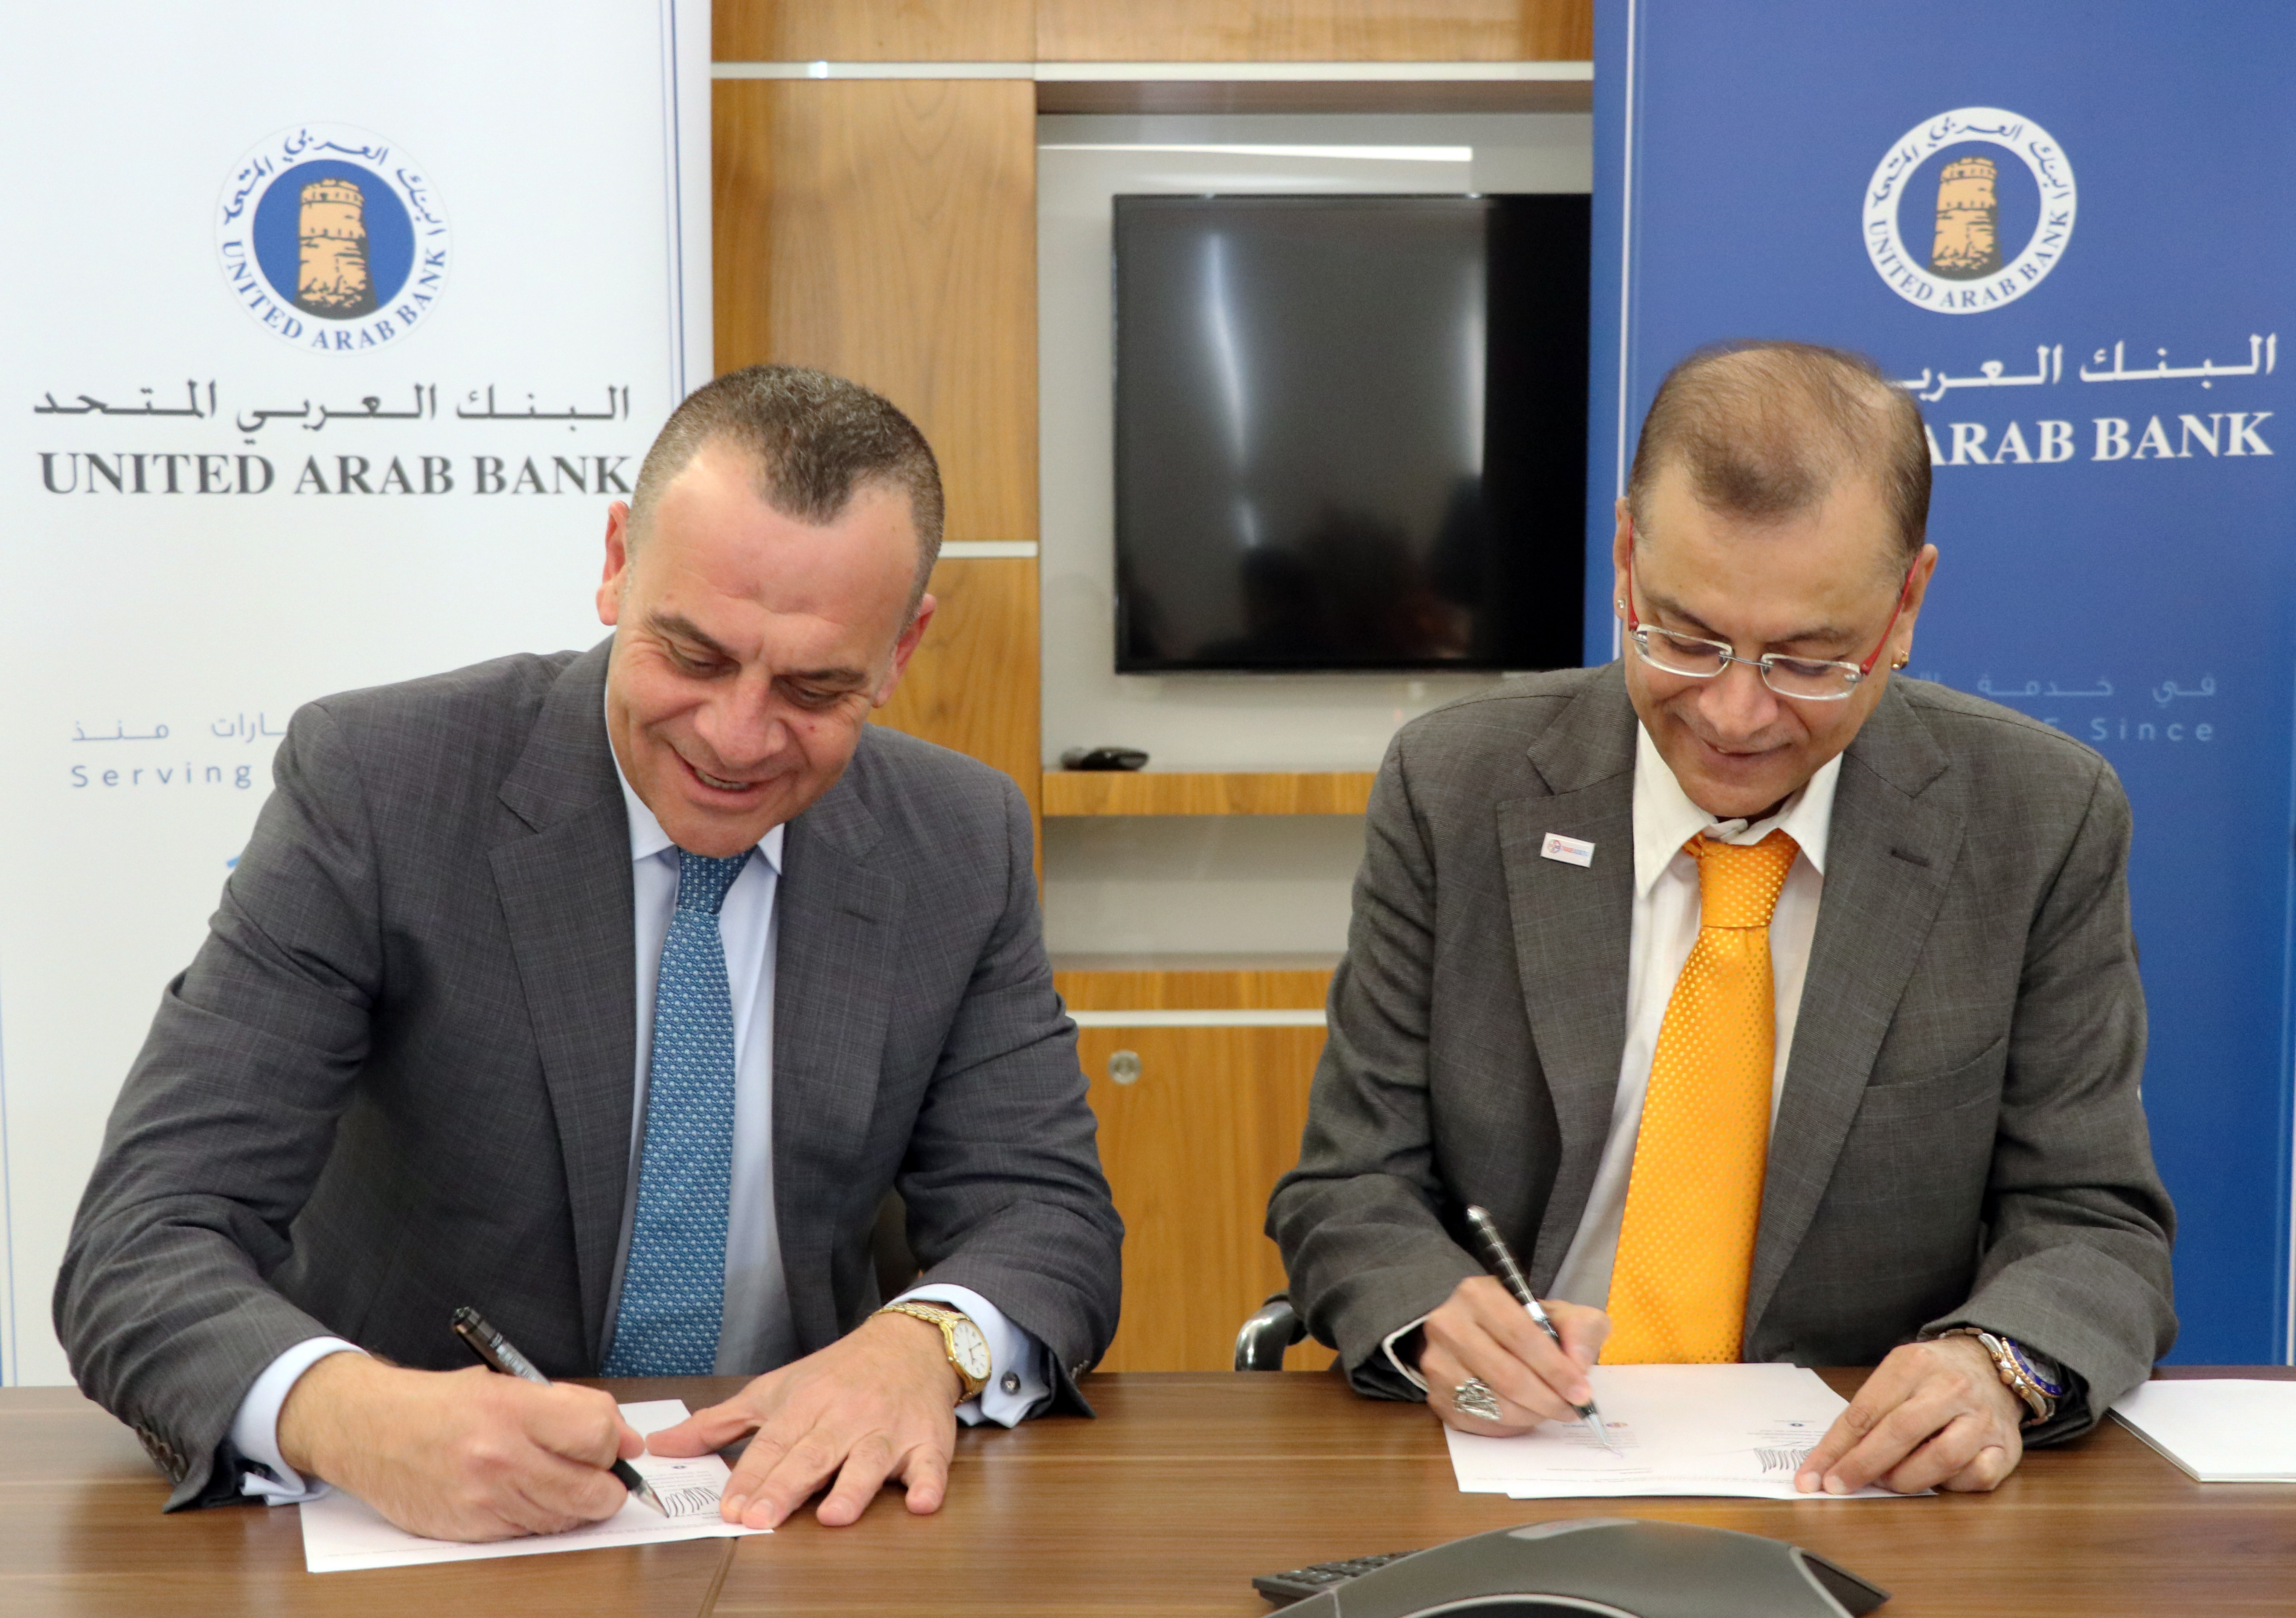 البنك العربي المتحد يبرم اتفاقية شراكة للانضمام إلى منصة "ترايد أسيتس" الرقمية